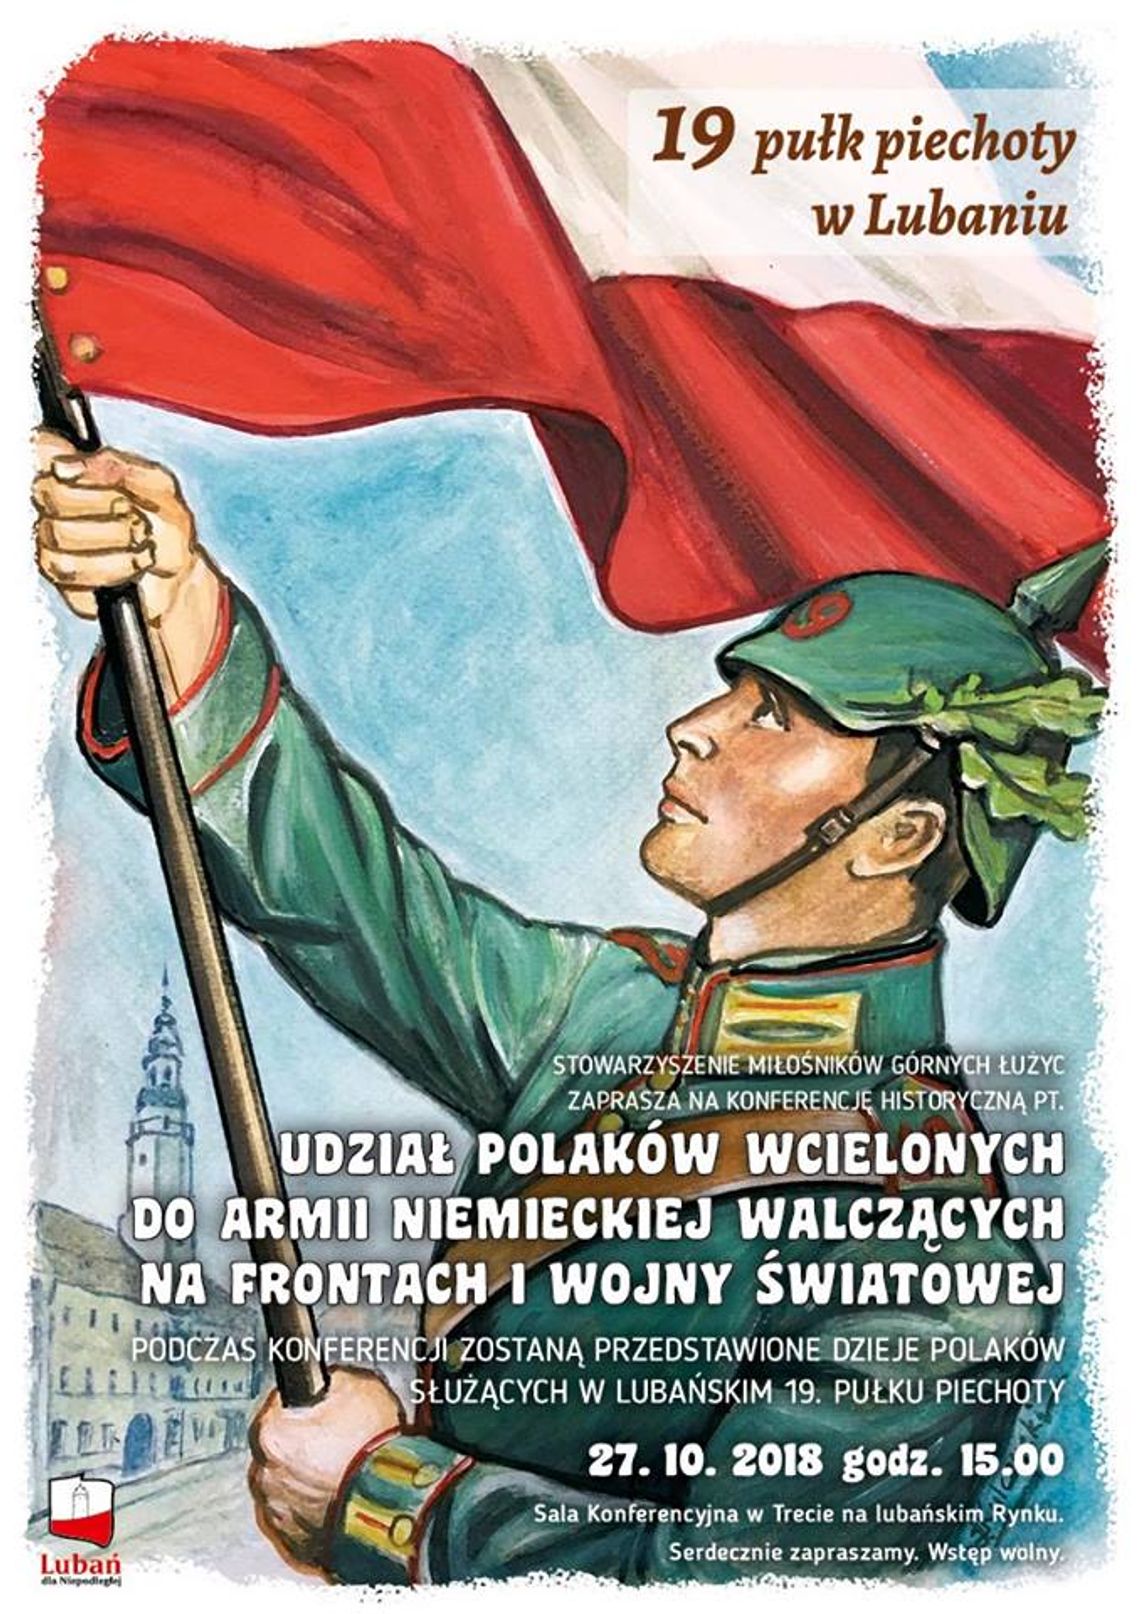 Udiazał Polaków wcielonych do Armii Niemieckiej walczących na frontach I Wojny Światowej